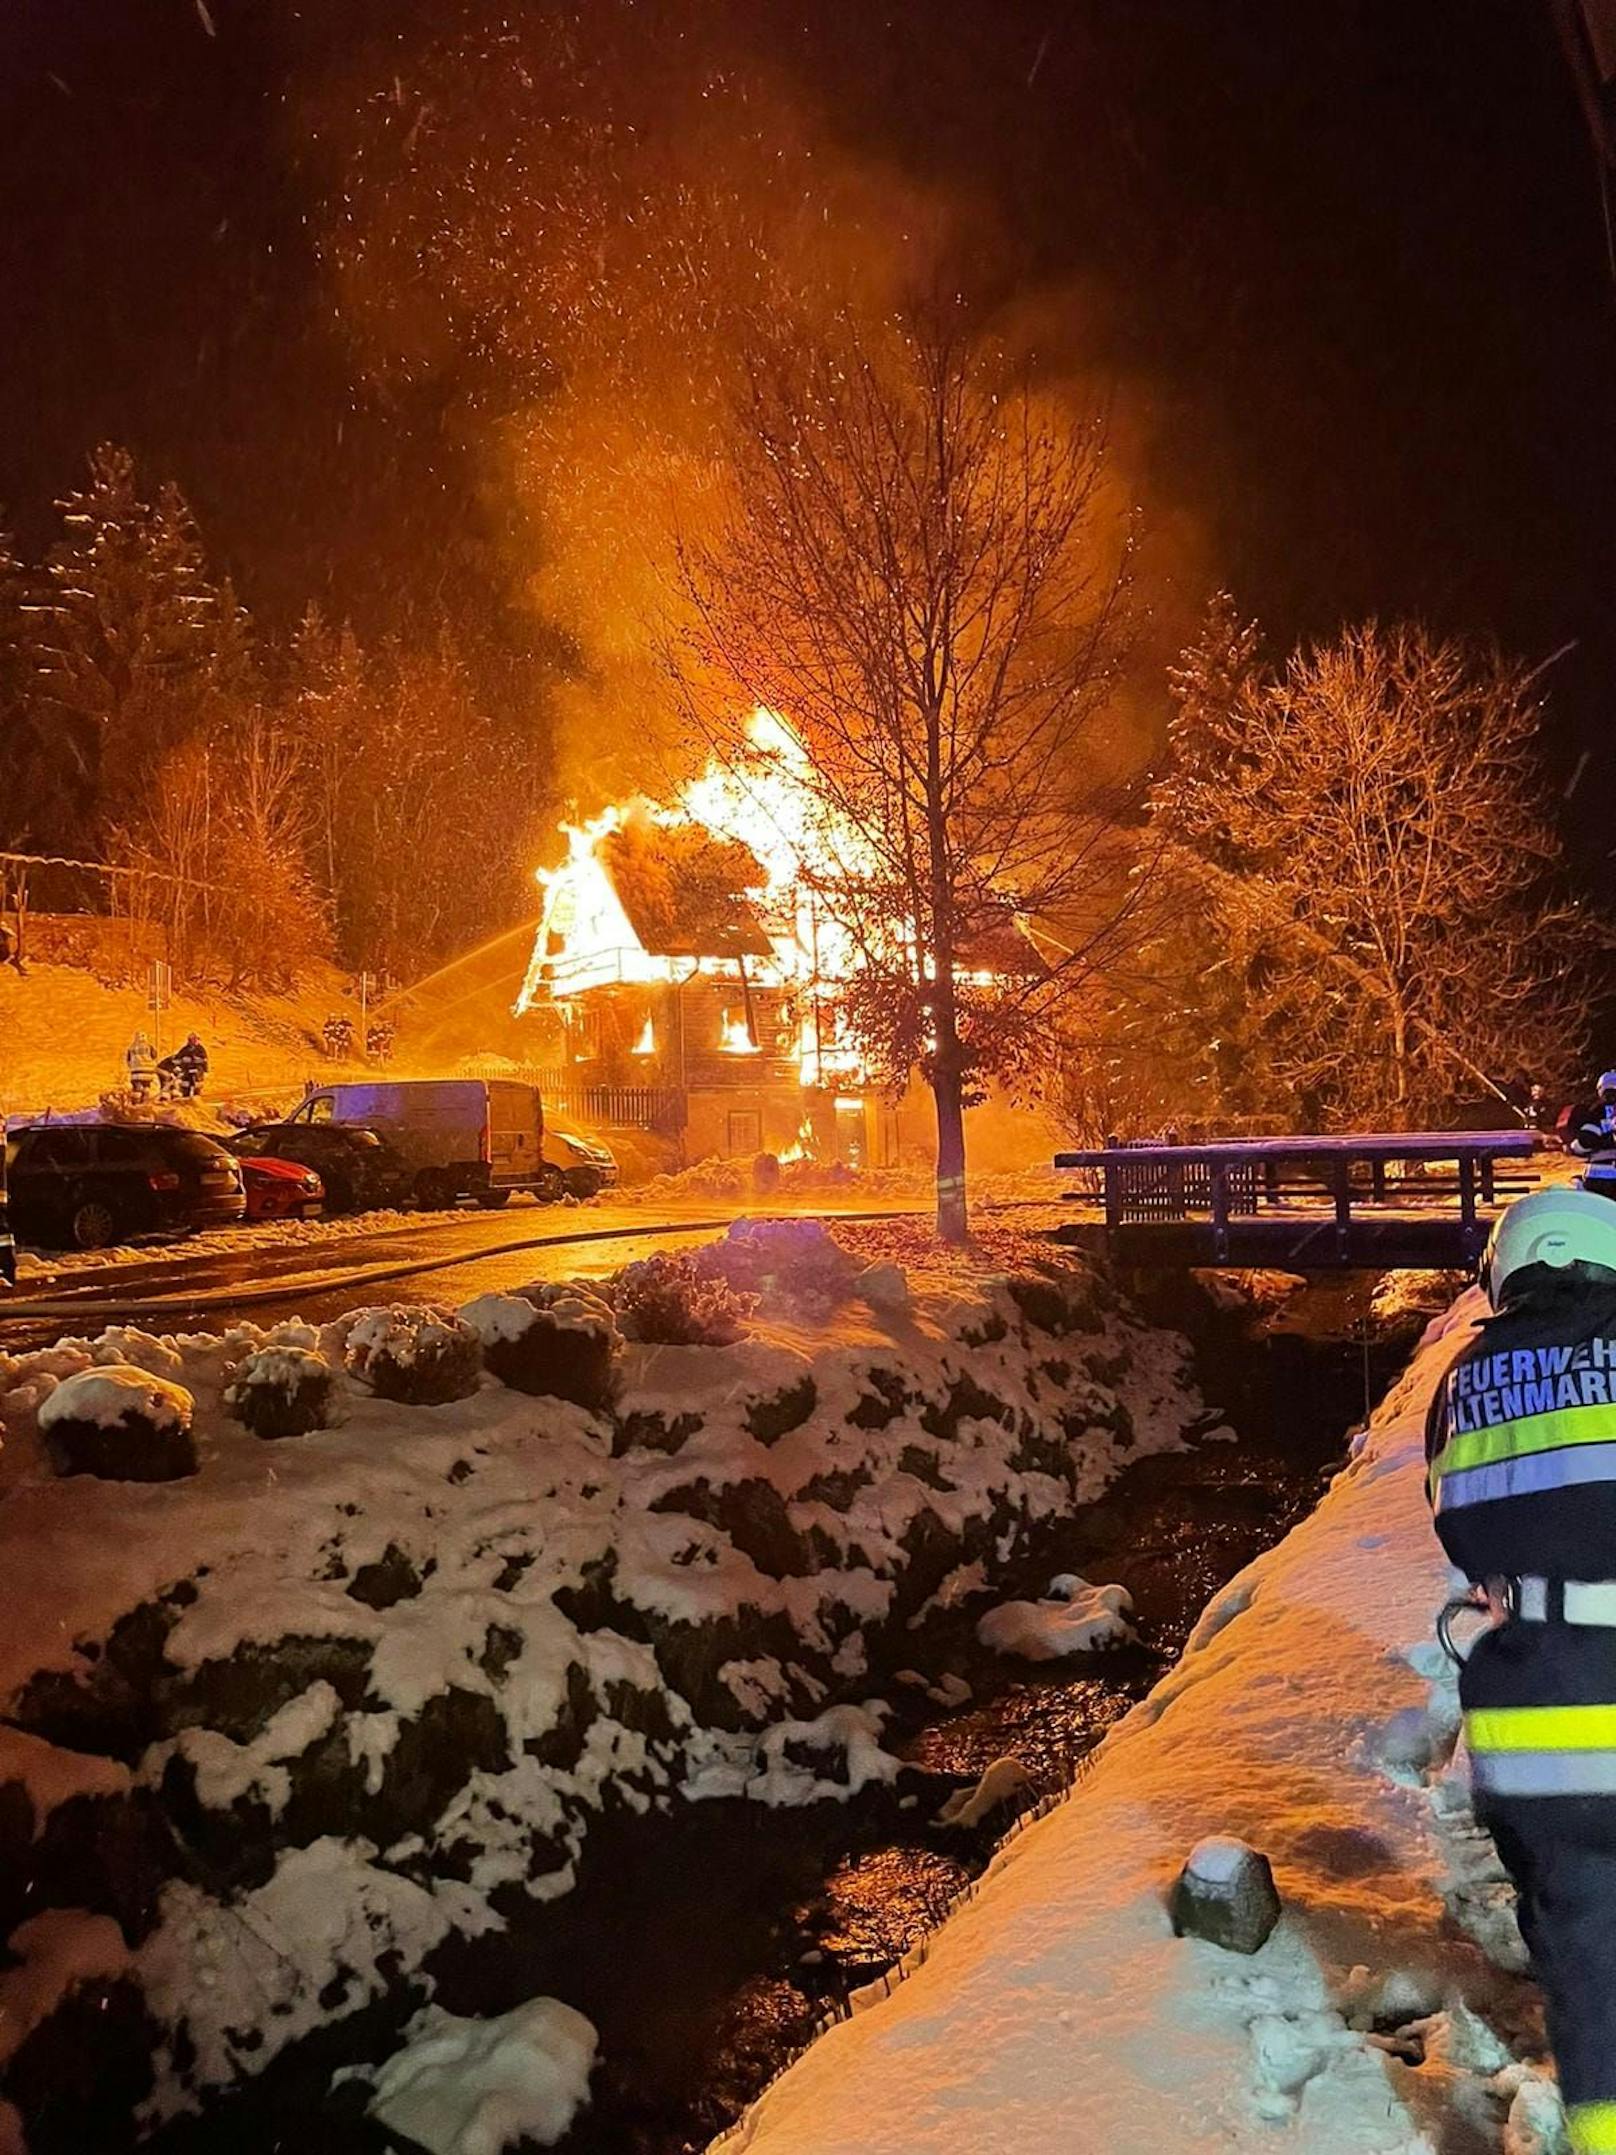 Familienhaus steht in Flammen – Großeinsatz läuft